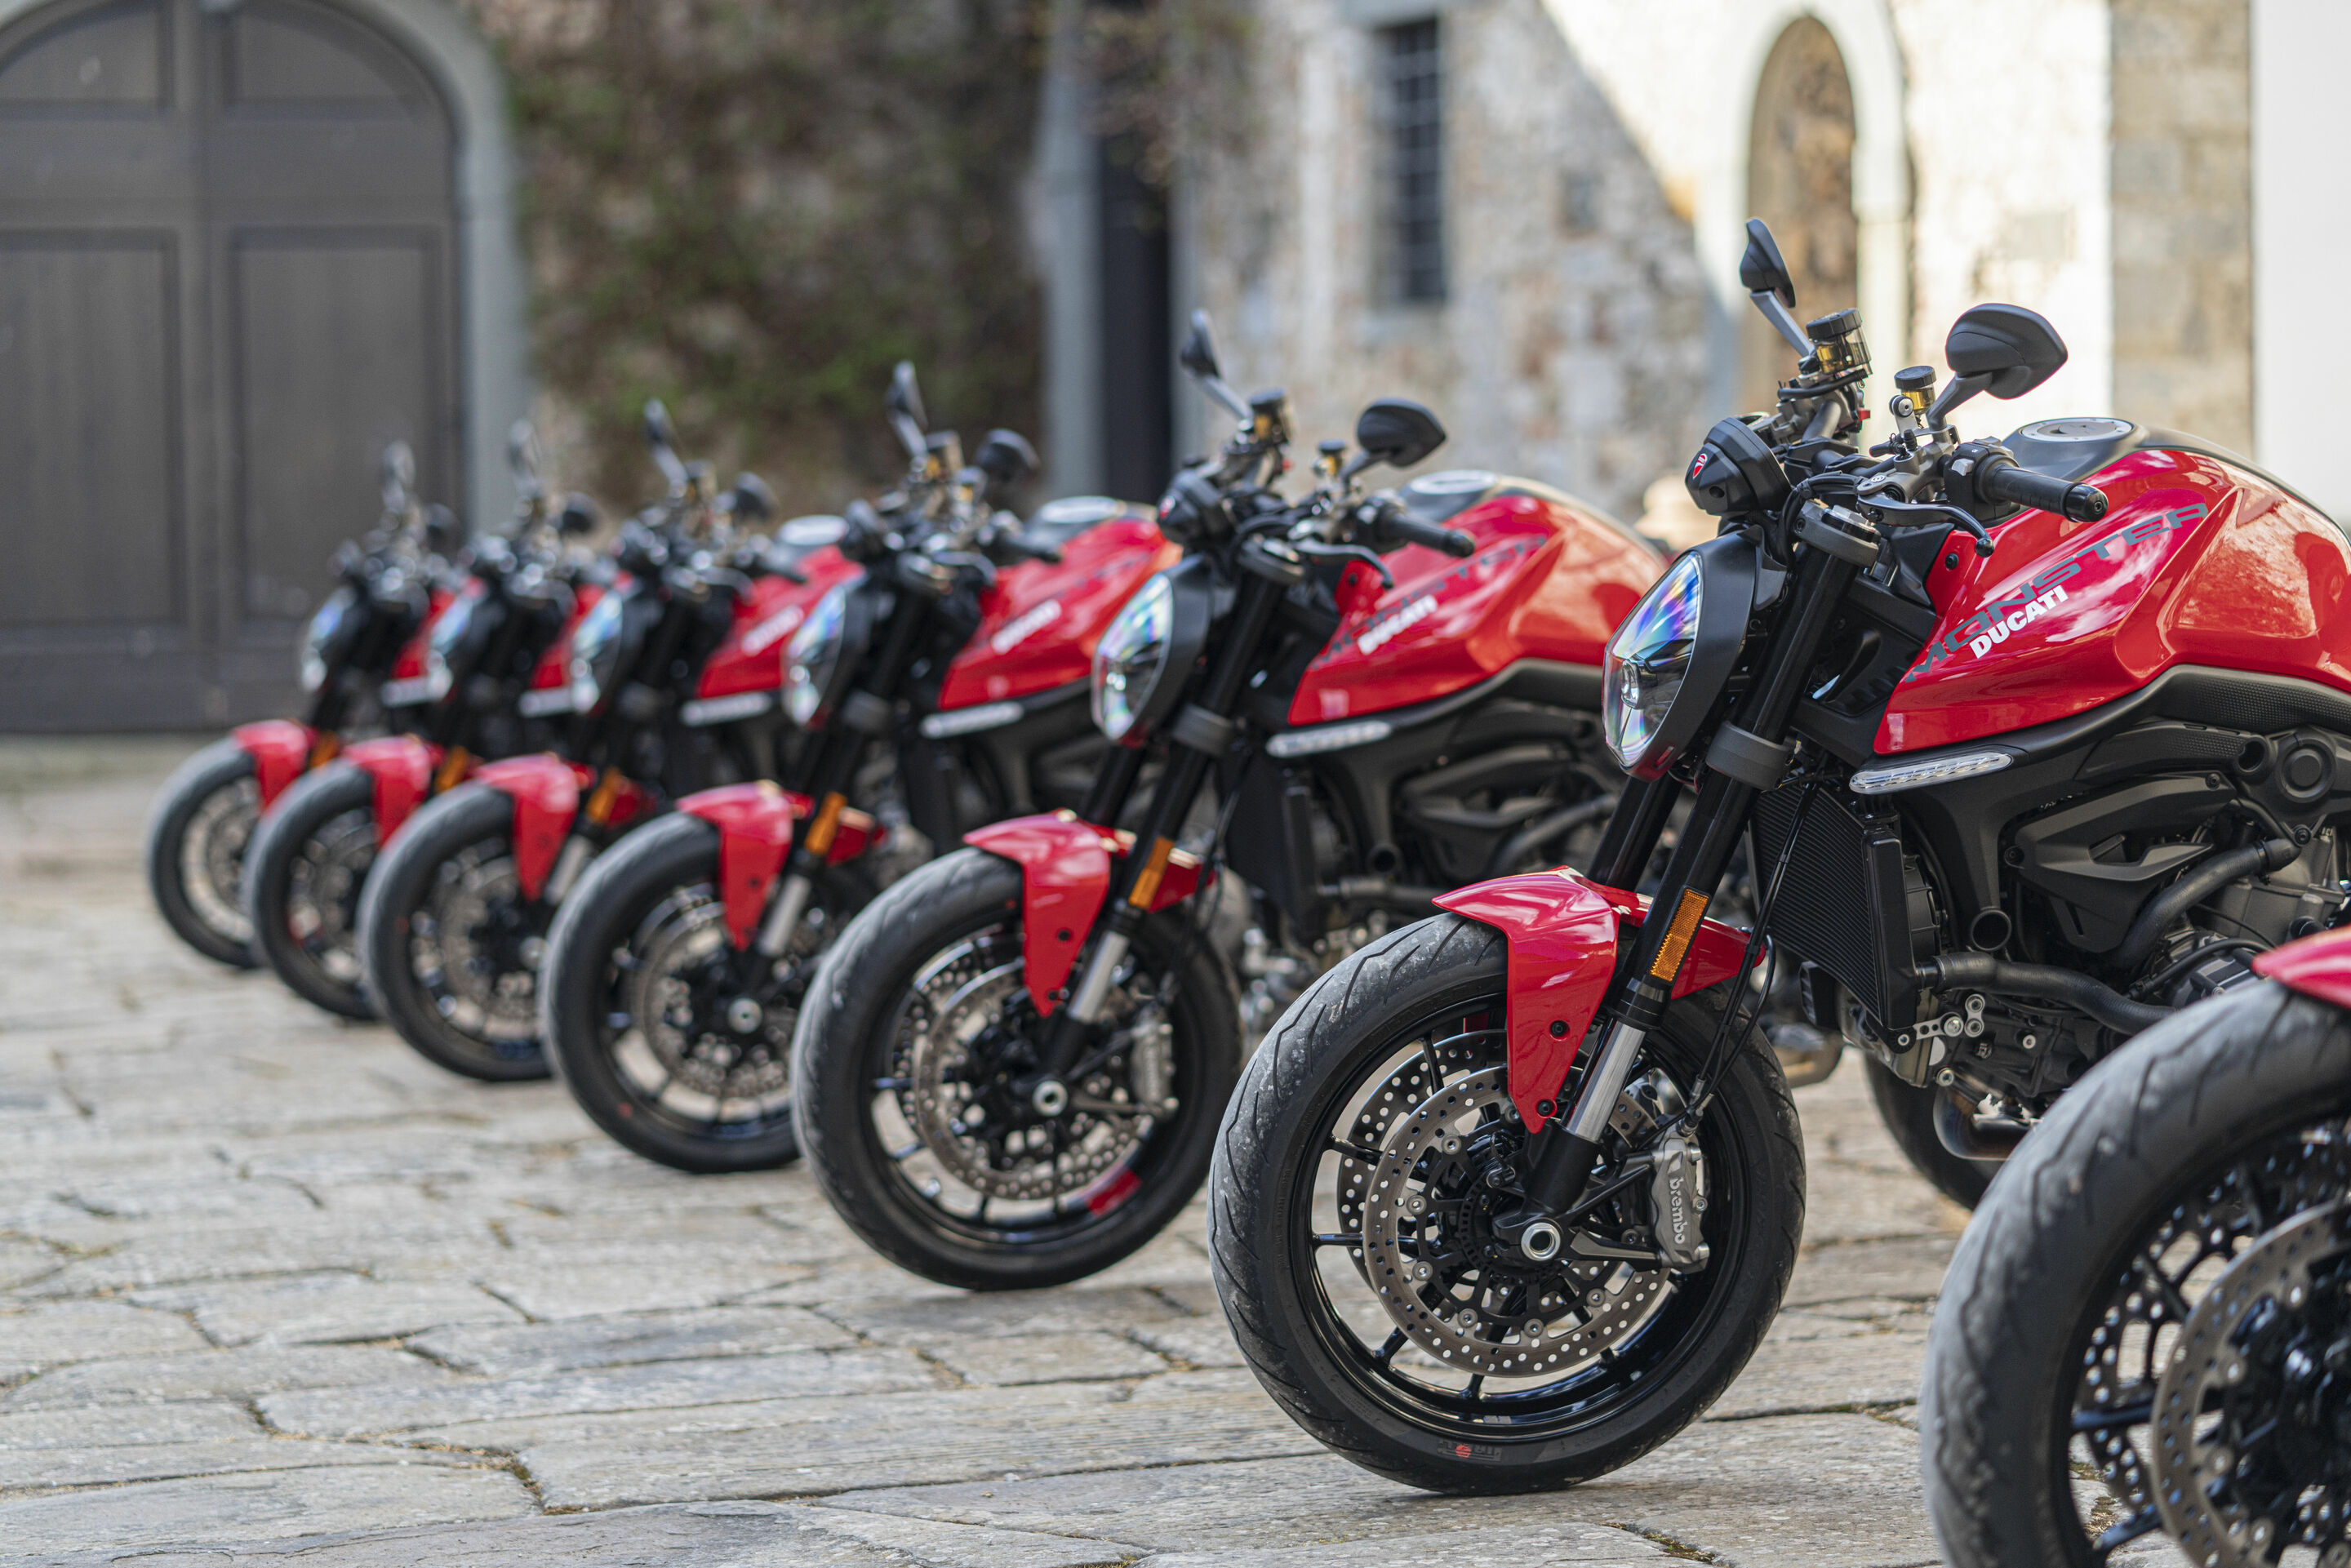 Ducati gibt Auslieferungen, Umsatz und Betriebsergebnis für das erste Halbjahr 2022 bekannt